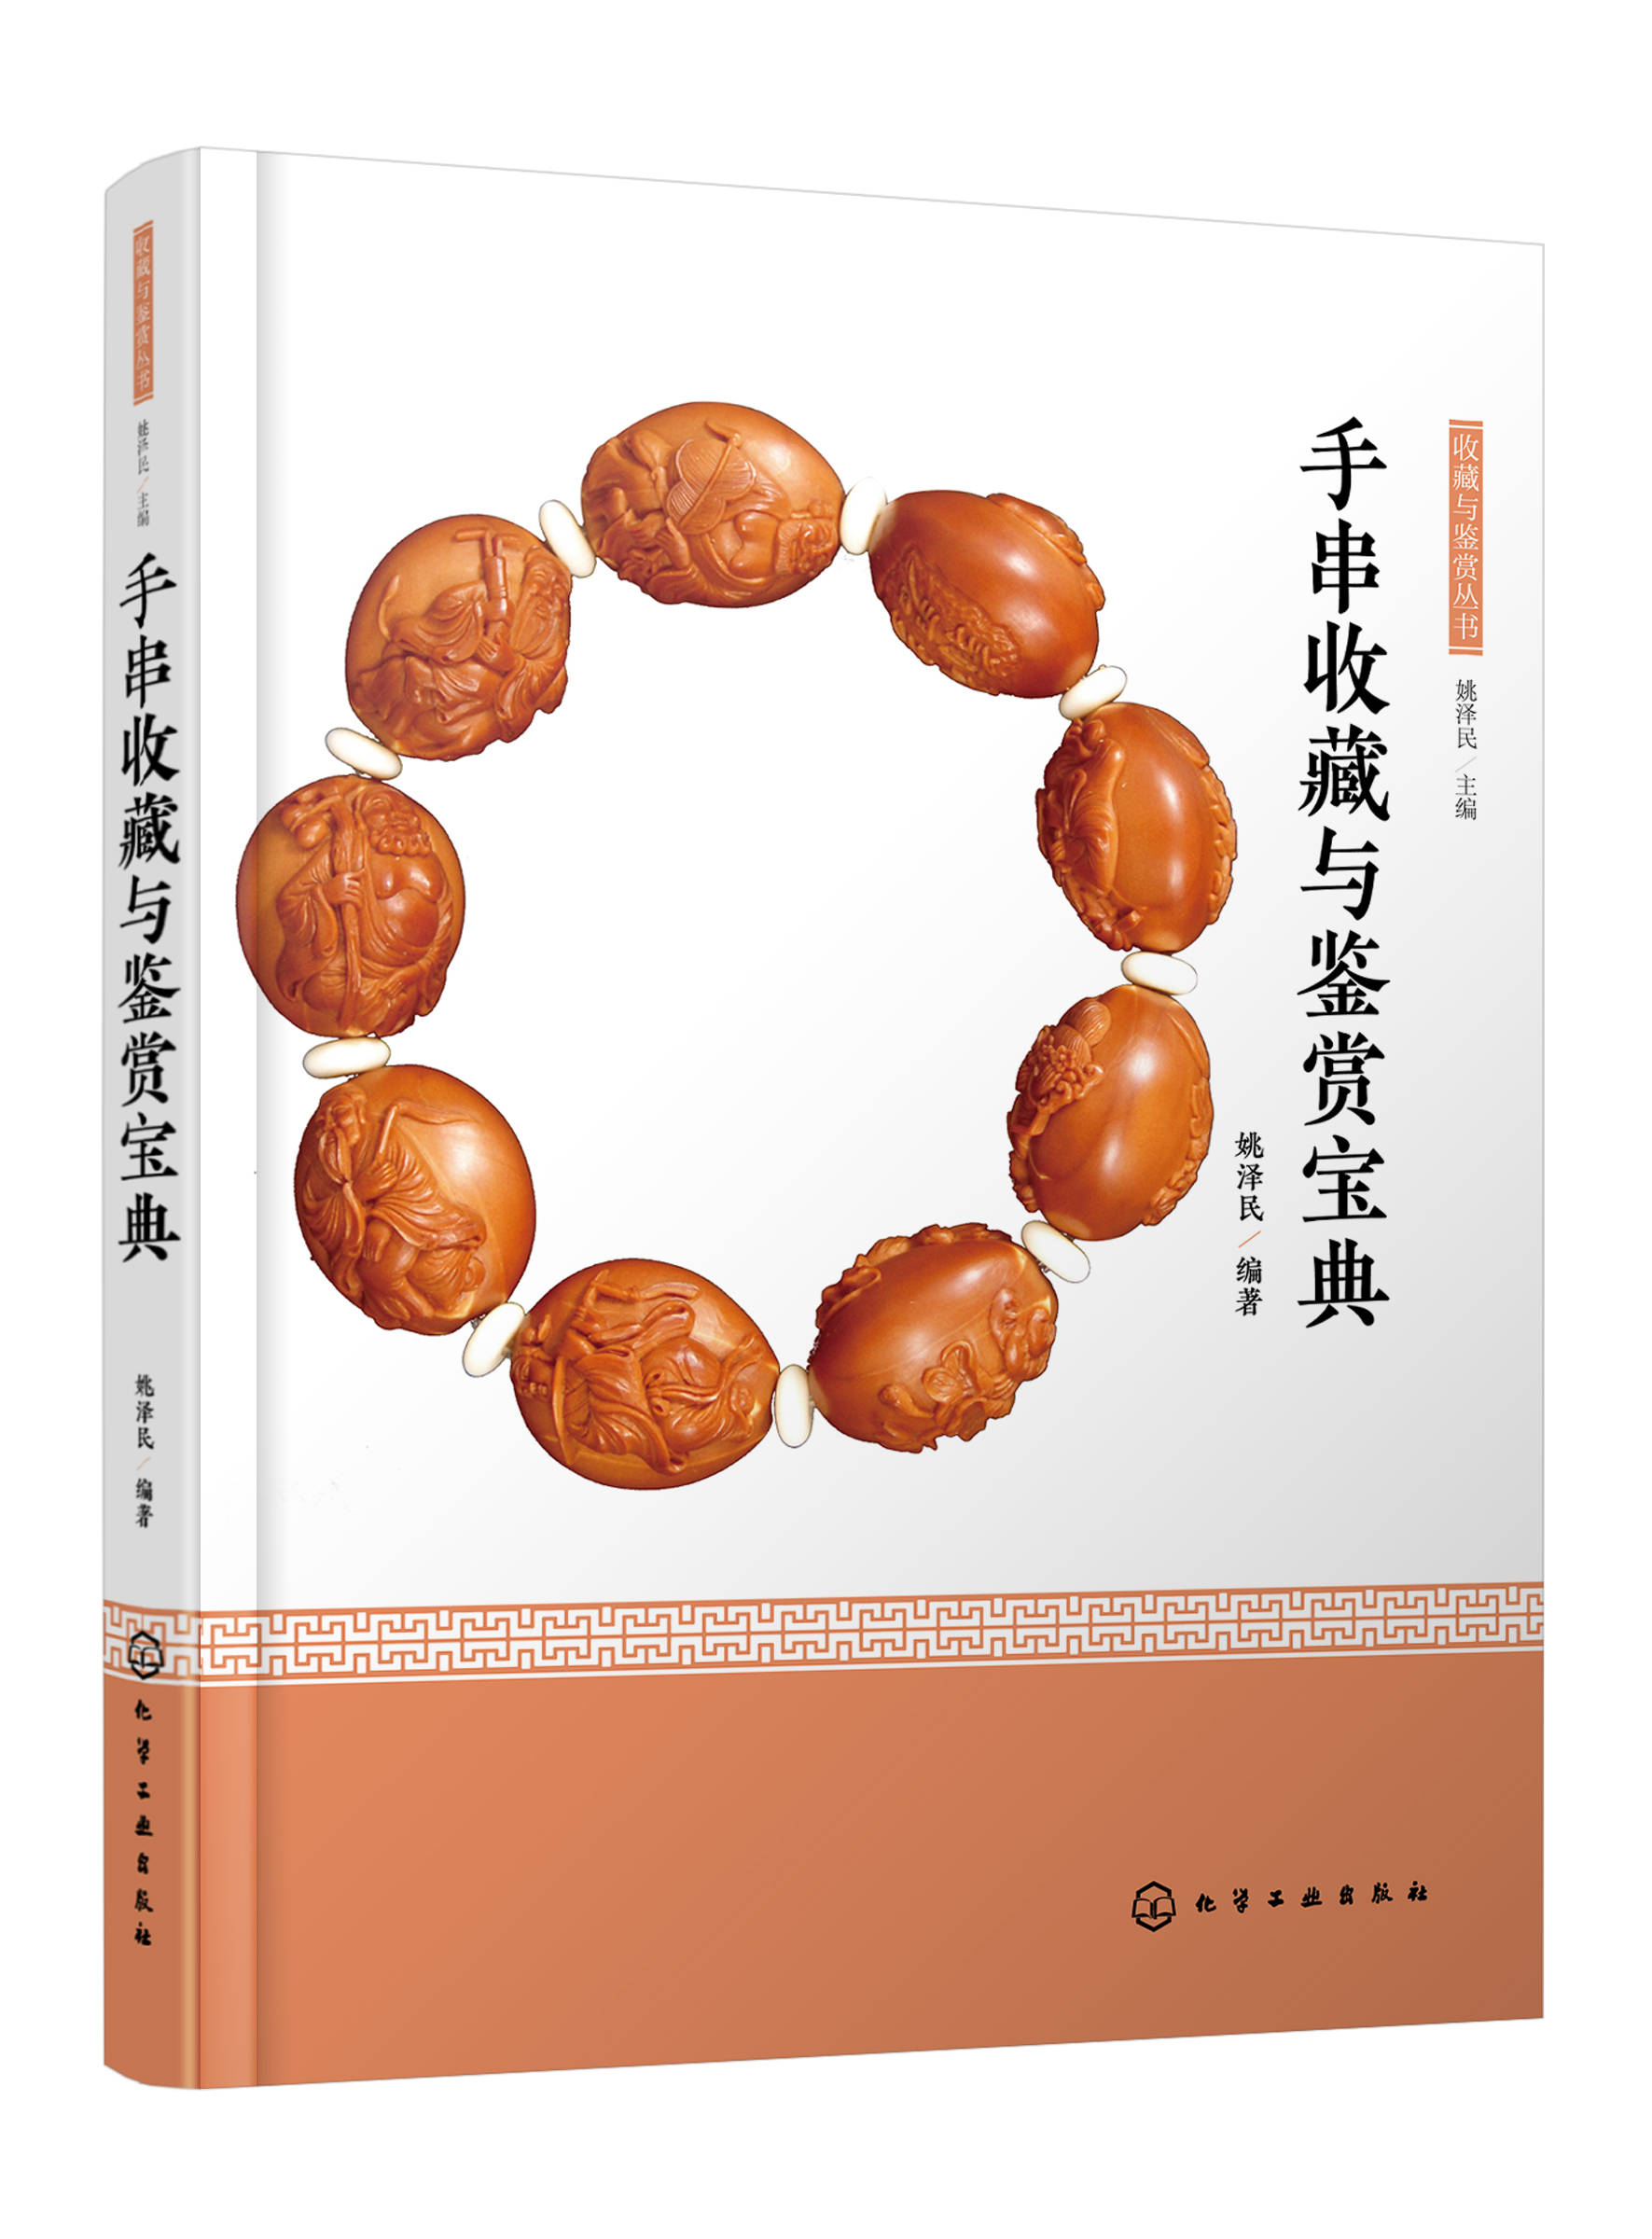 澳门宝典苹果版下载
:“手串之美”——姚泽民《手串收藏与鉴赏宝典》一书在京出版